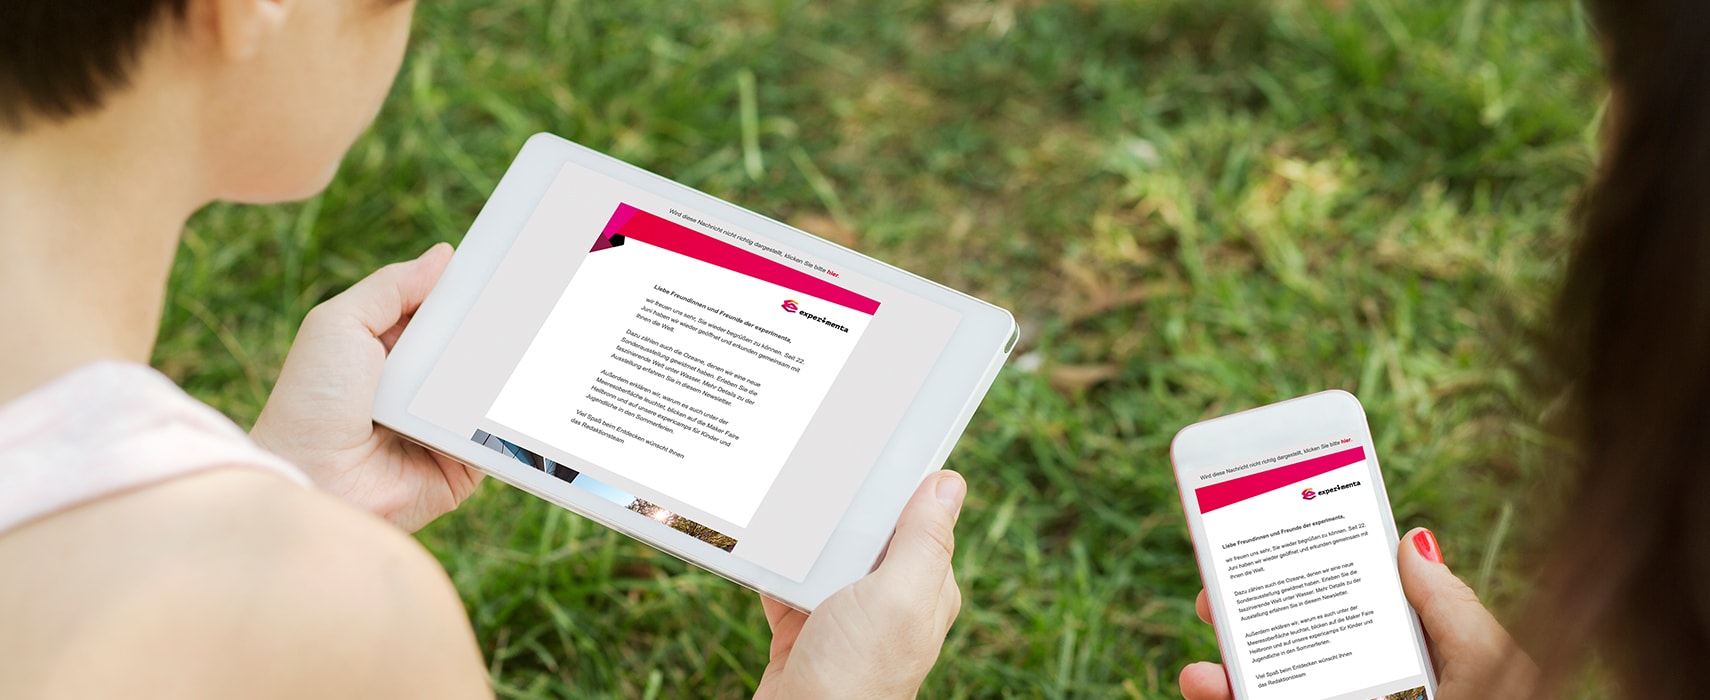 Schulterblick auf Tablet und Smartphone mit experimenta Newsletter am Screen